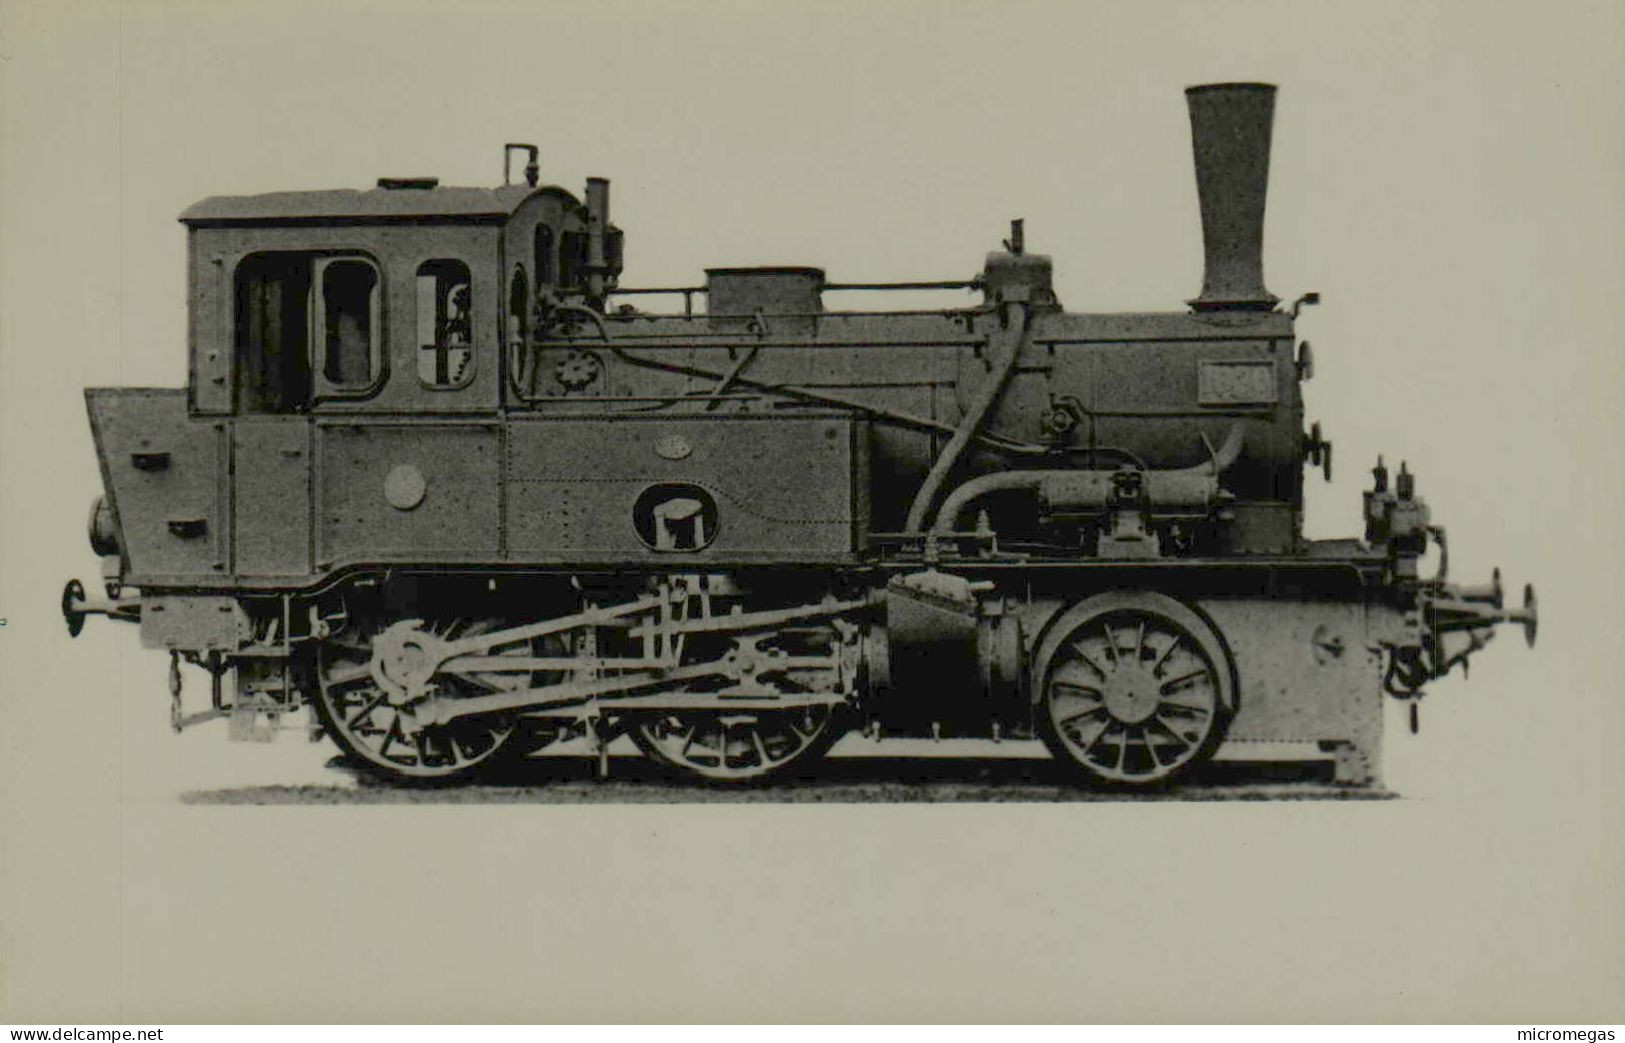 Locomotive X 70 7012 - Lokomotivbild-Archiv Bellingrodt - Wuppertal Barmen - Trains